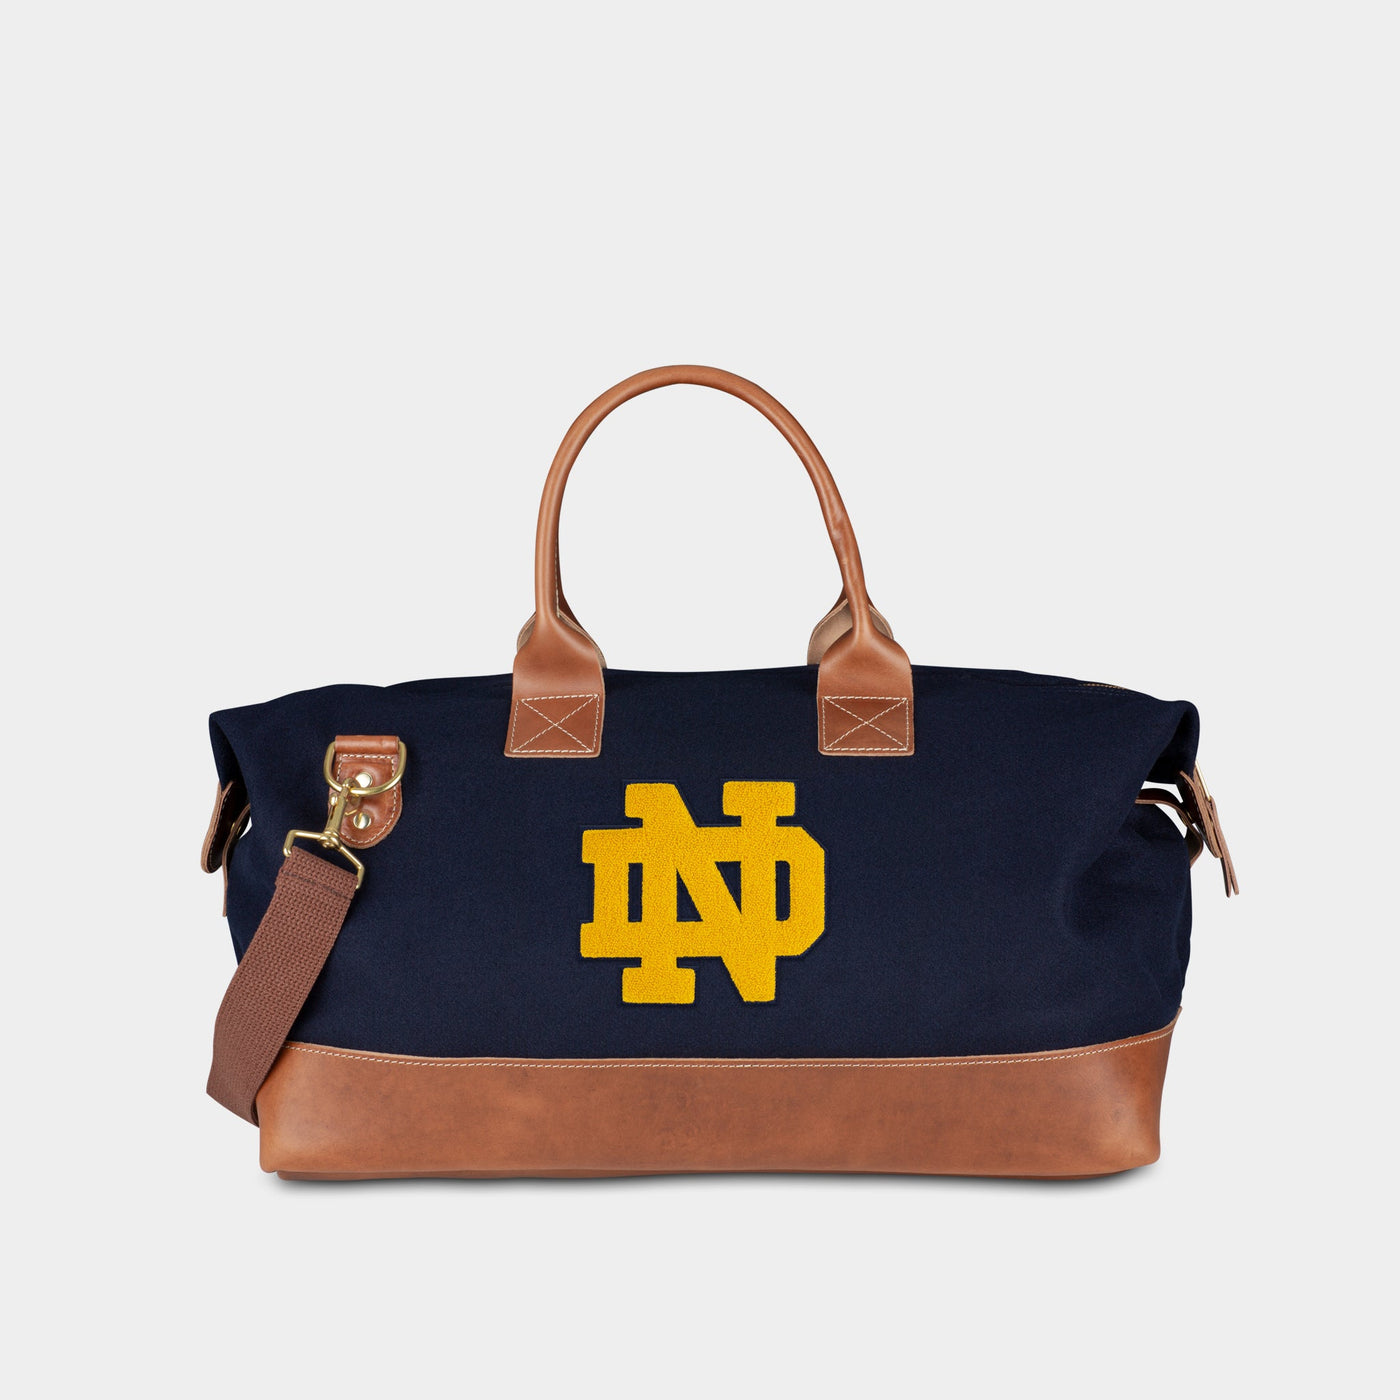 Notre Dame handbag